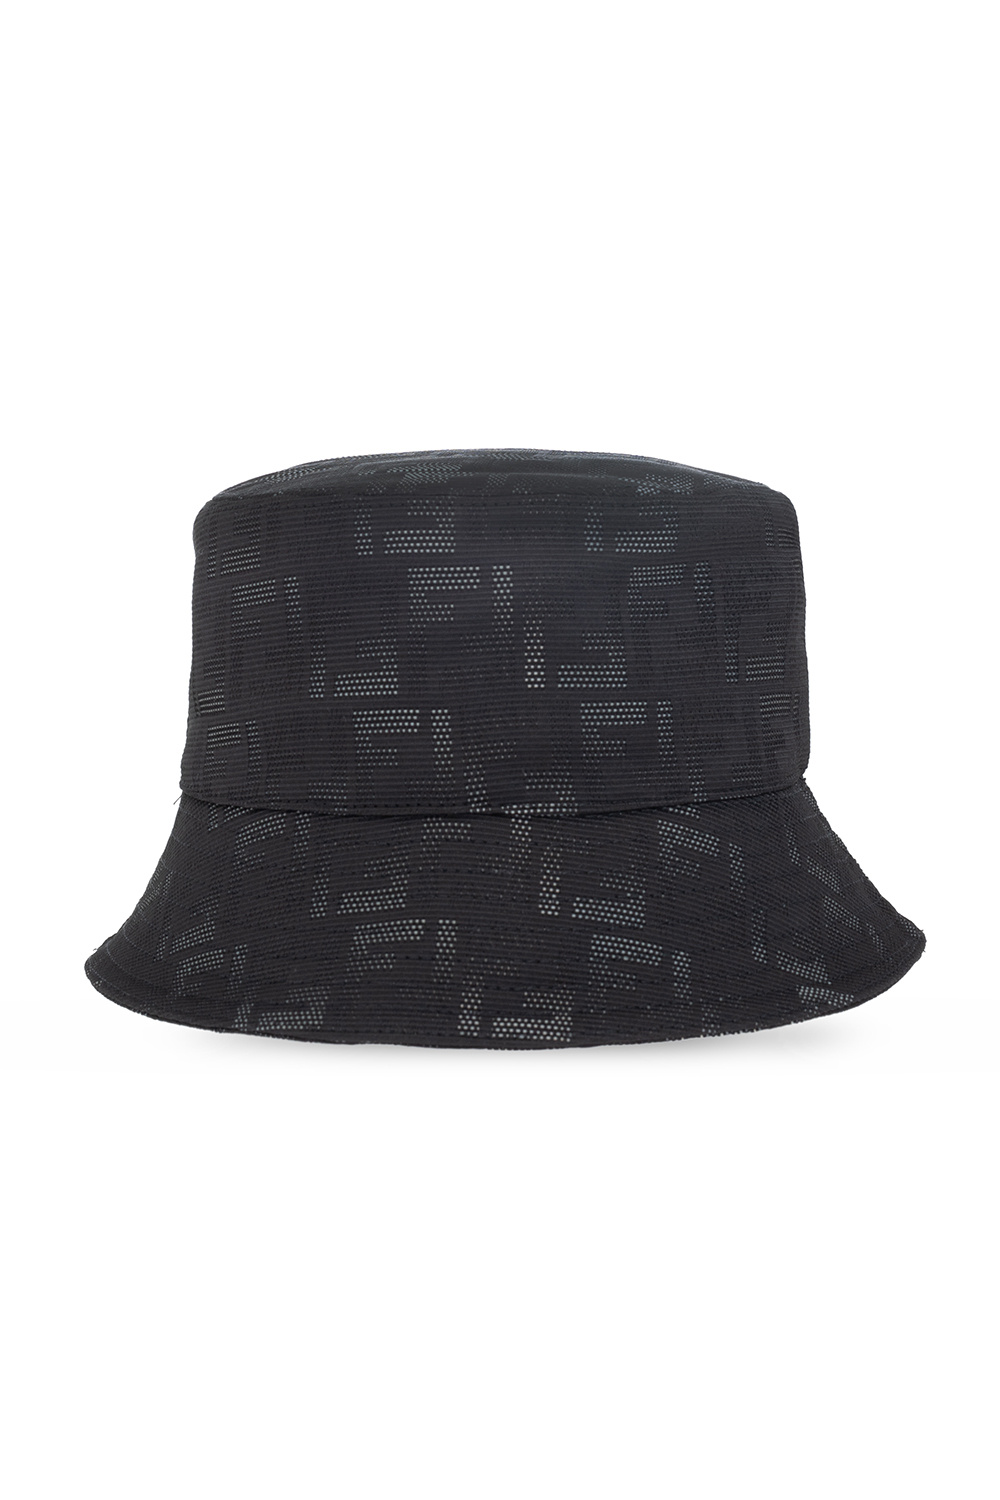 Fendi YEEZY 350 V2 Bred Hats